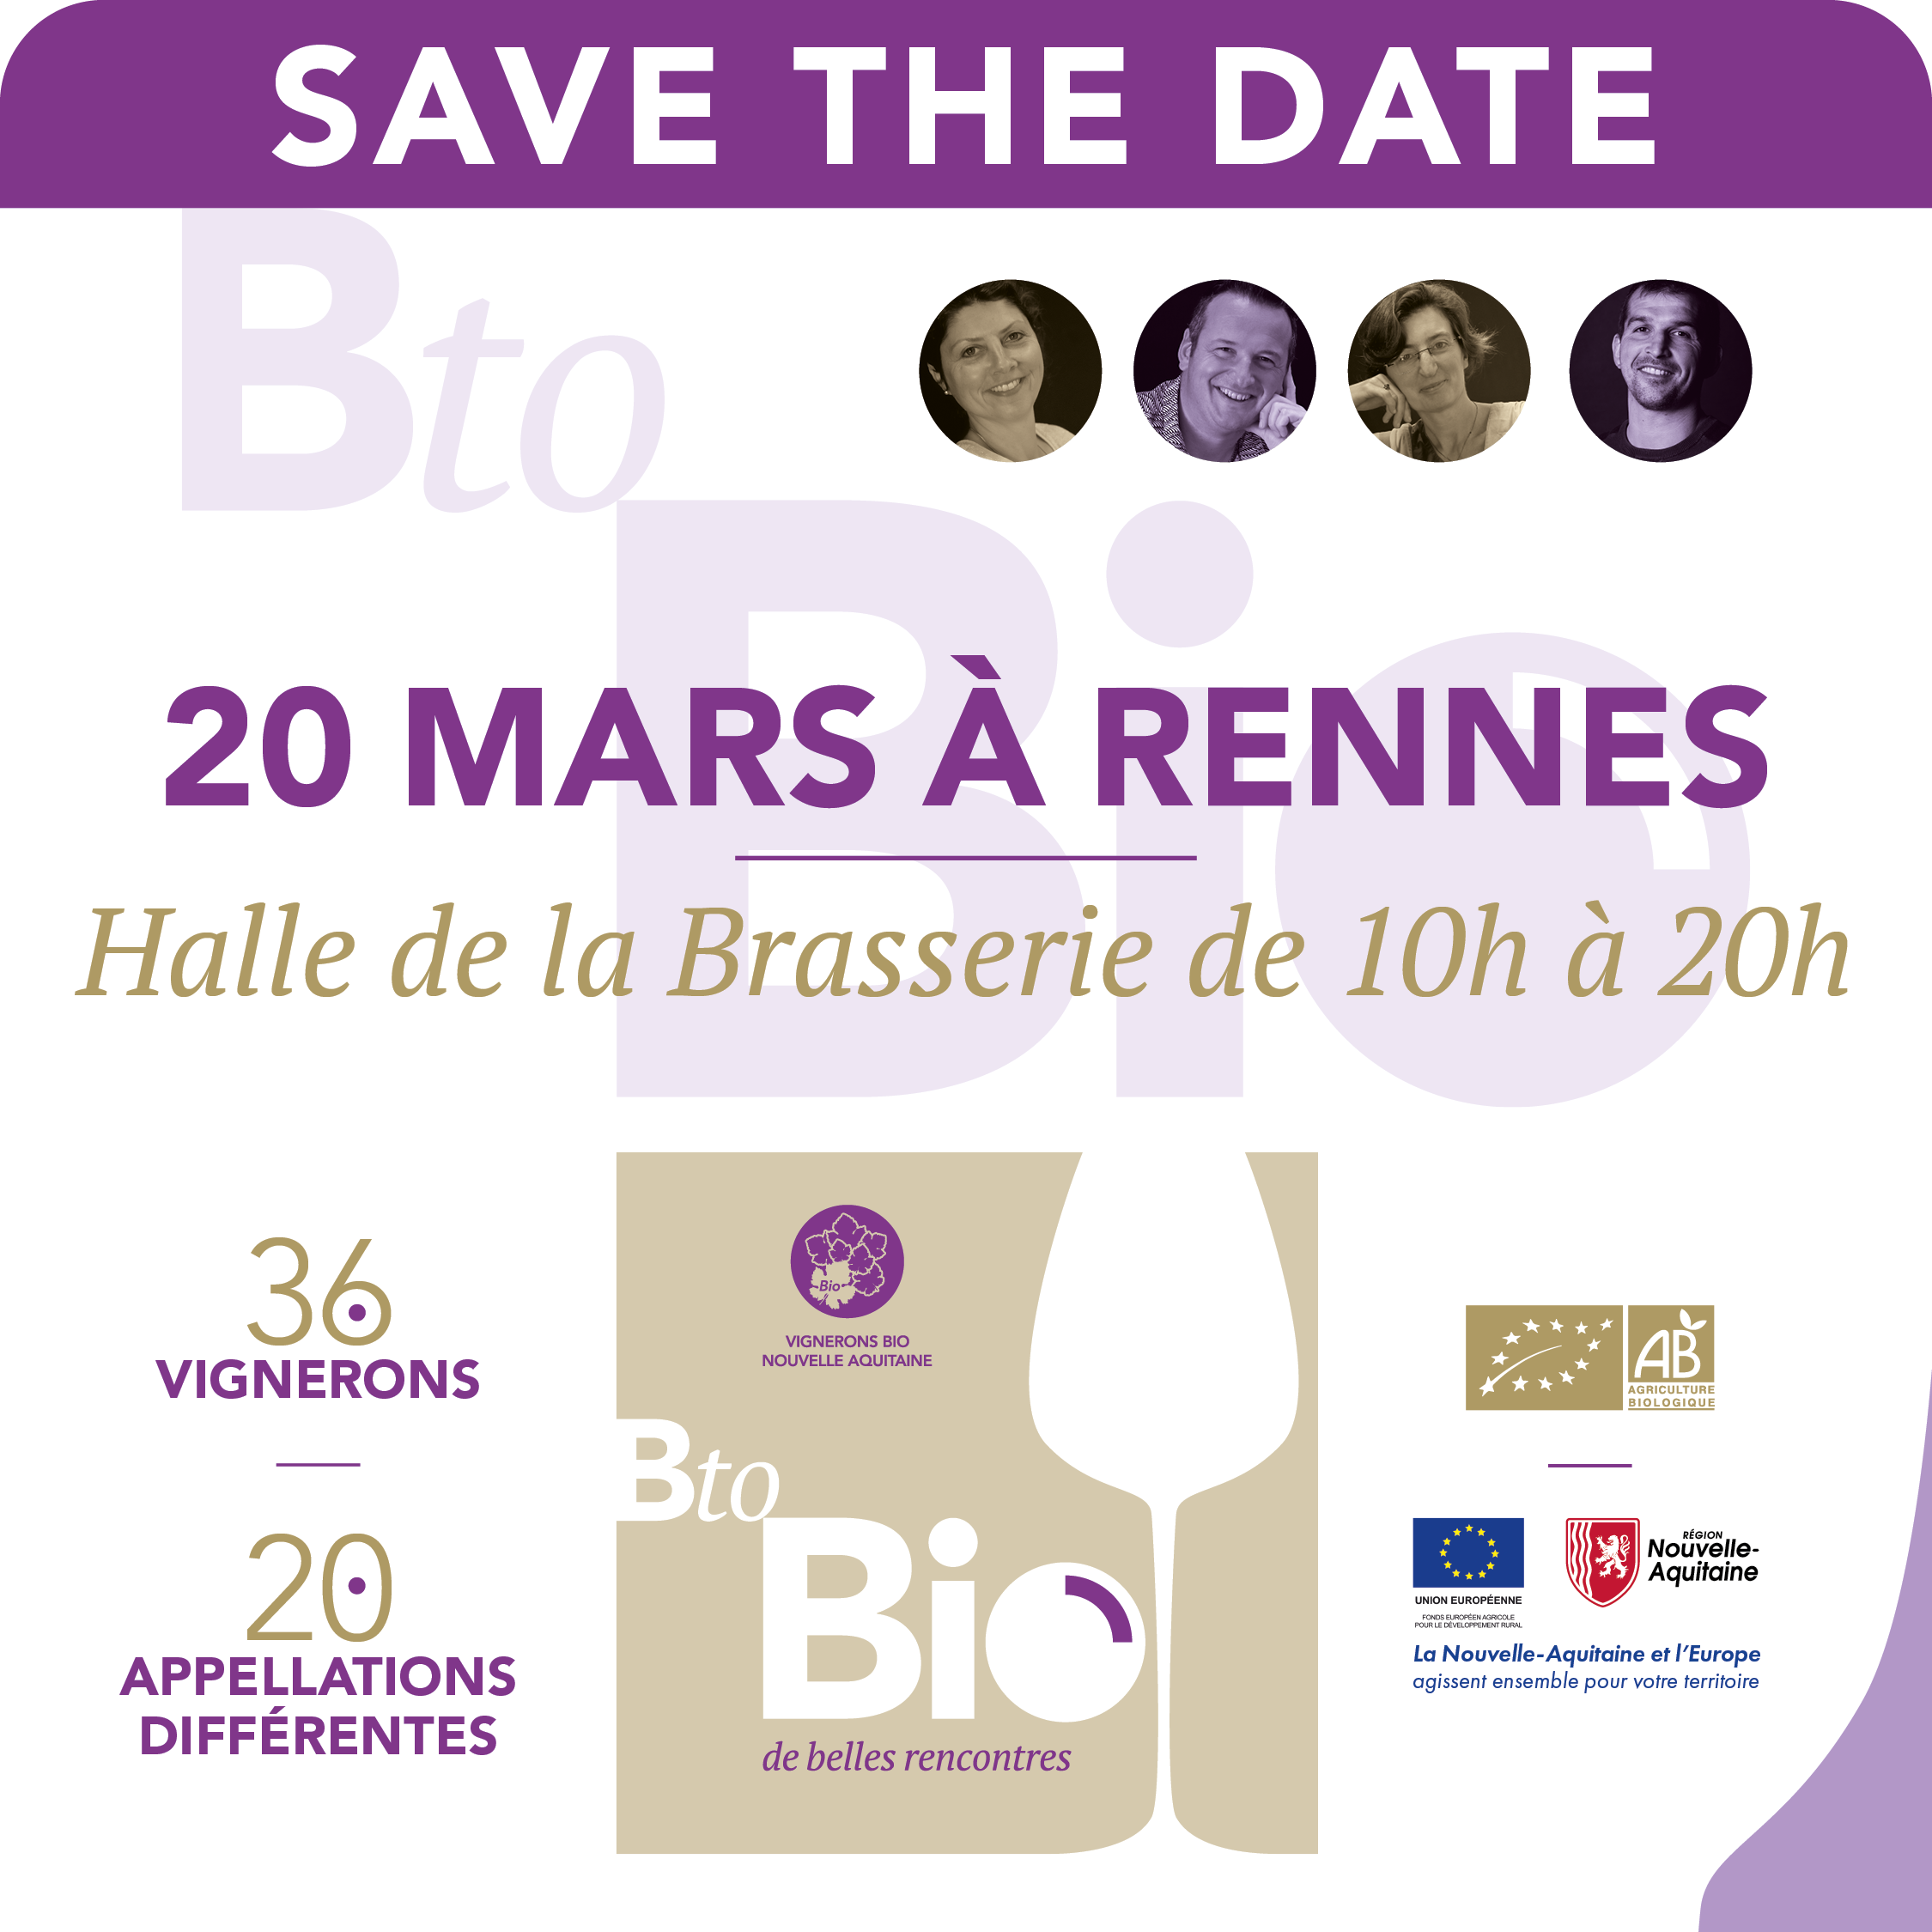 Lire la suite à propos de l’article B to Bio Rennes